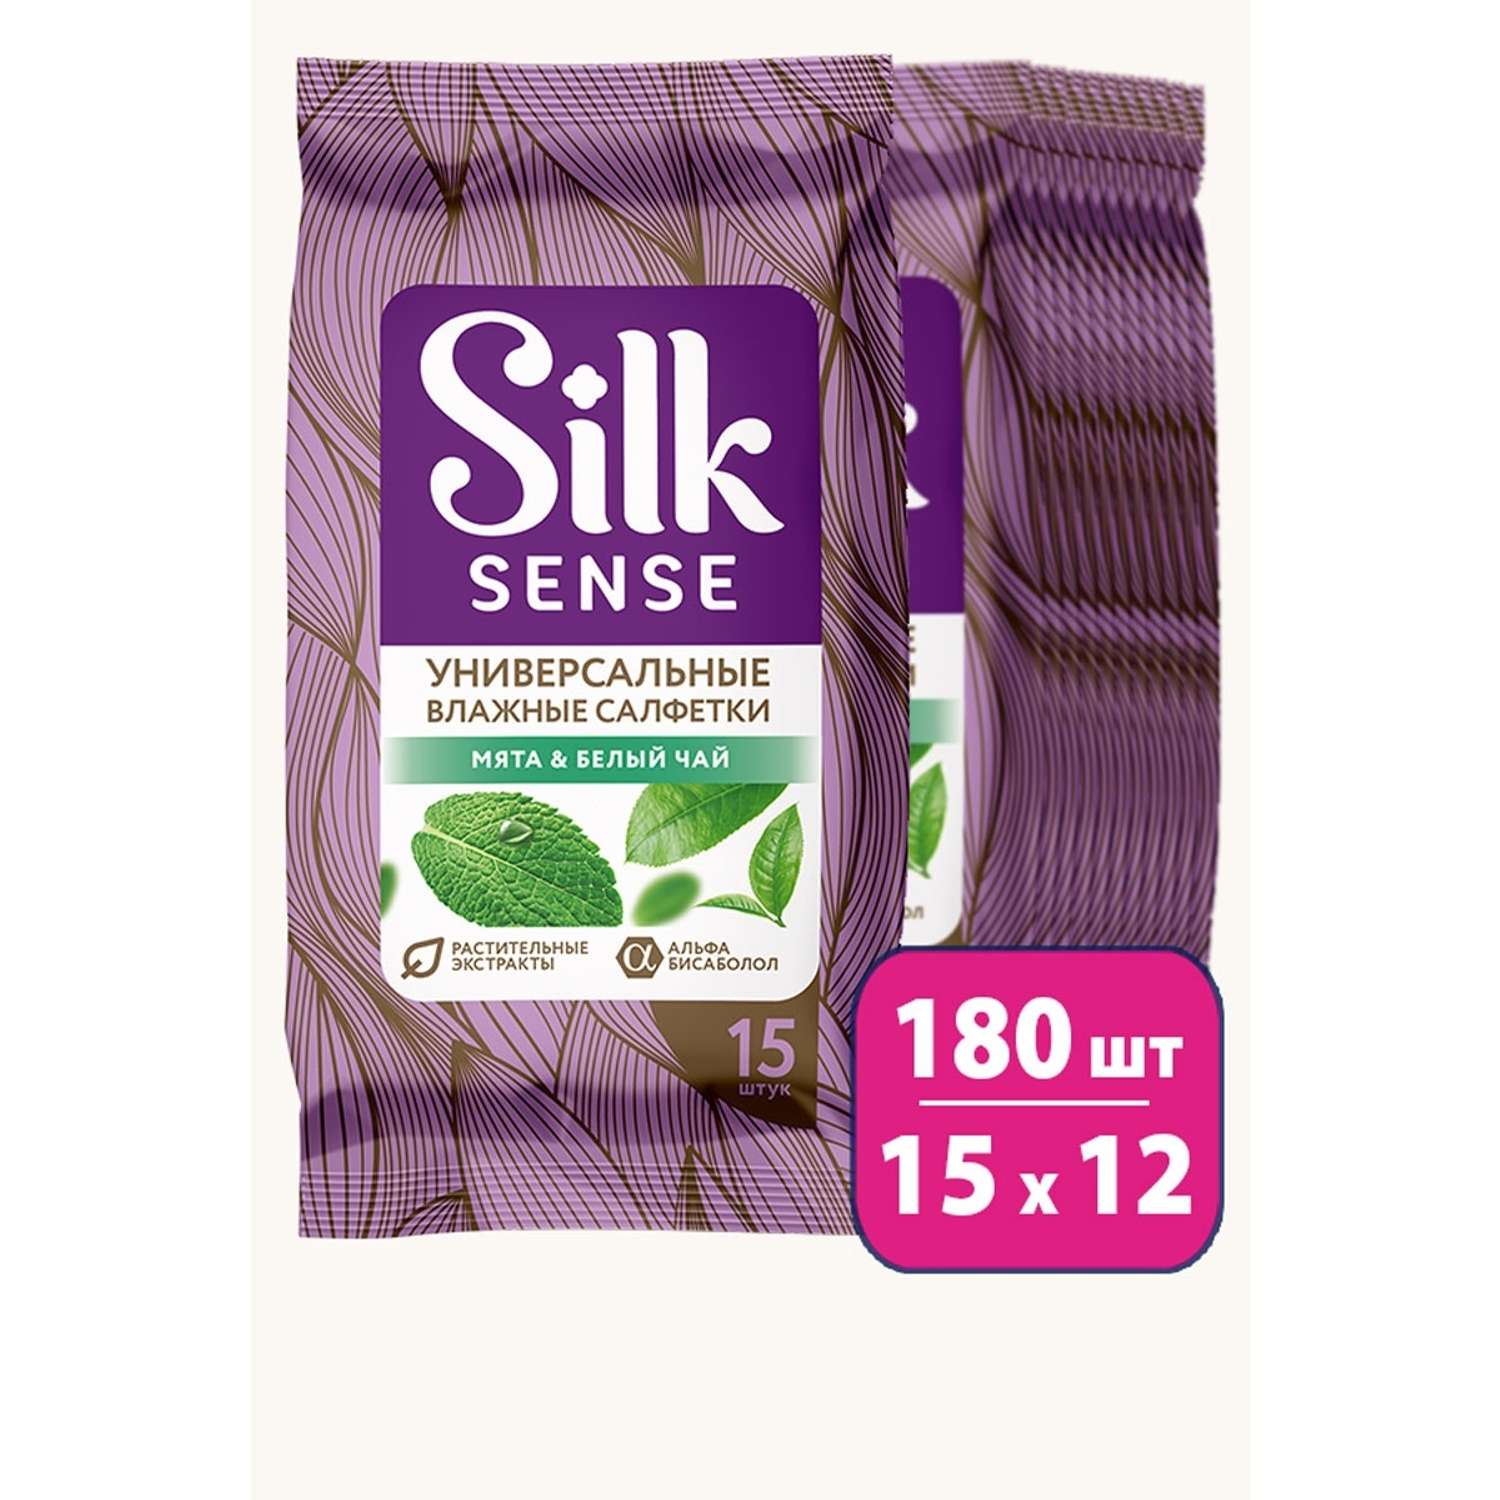 Влажные салфетки Ola! Silk Sense универсальные аромат Белый чай и Мята 15x12 уп.180 - фото 1